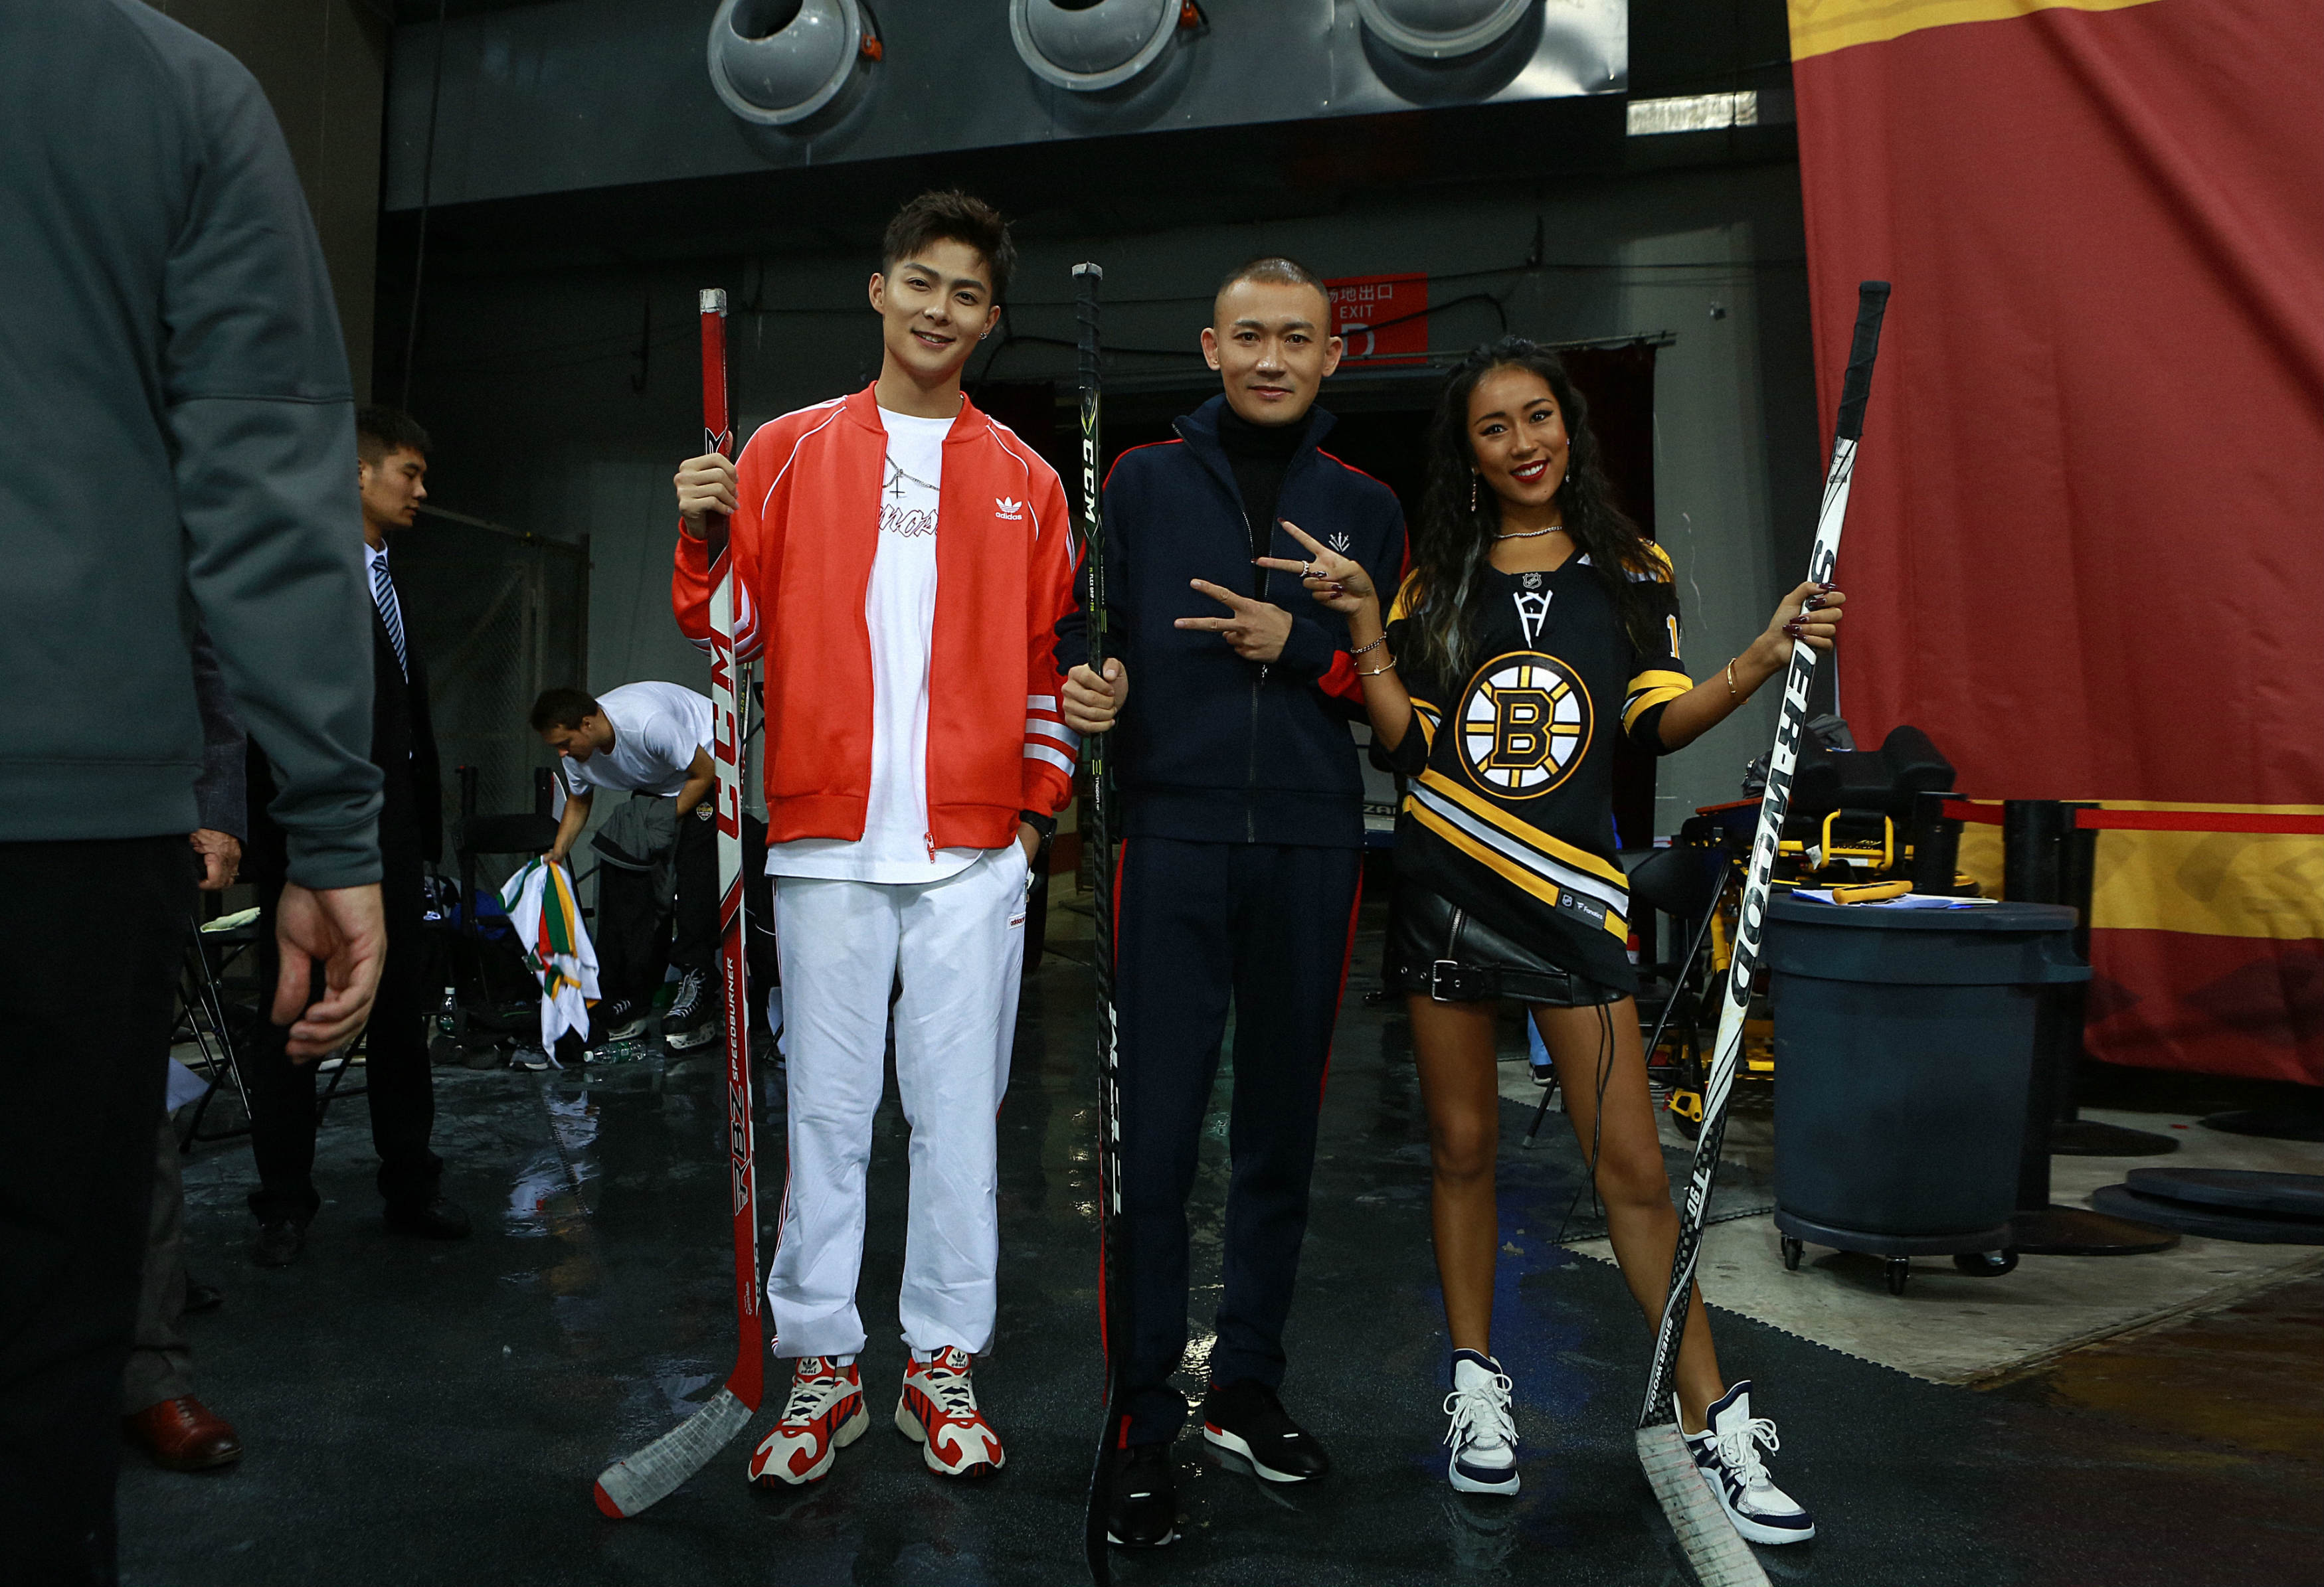 吉克隽逸领唱NHL中国赛北京站  与聂远张铭恩同场竞技